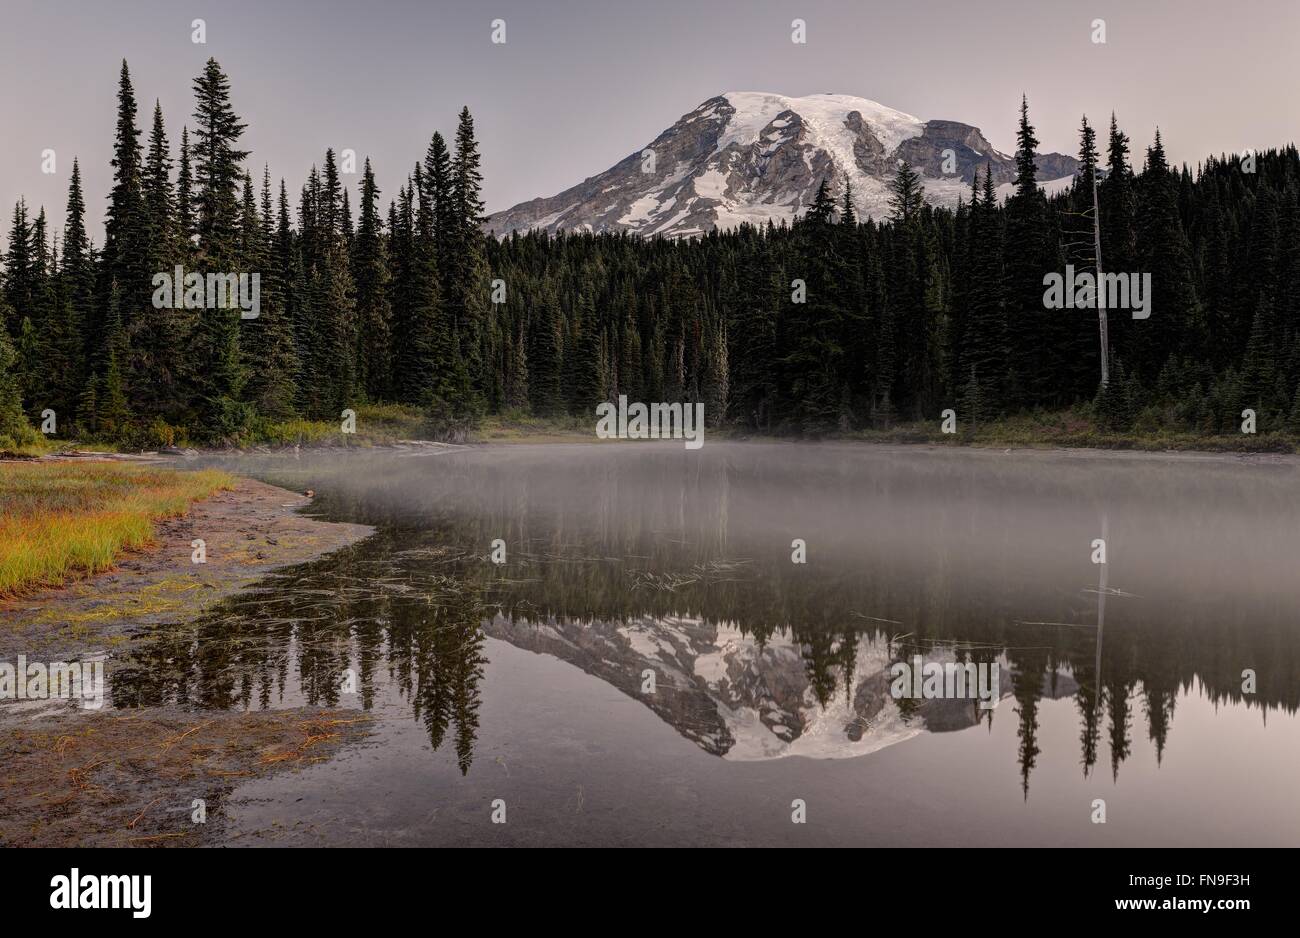 Forest landscape, Mount Rainier National Park, Washington, United States Stock Photo